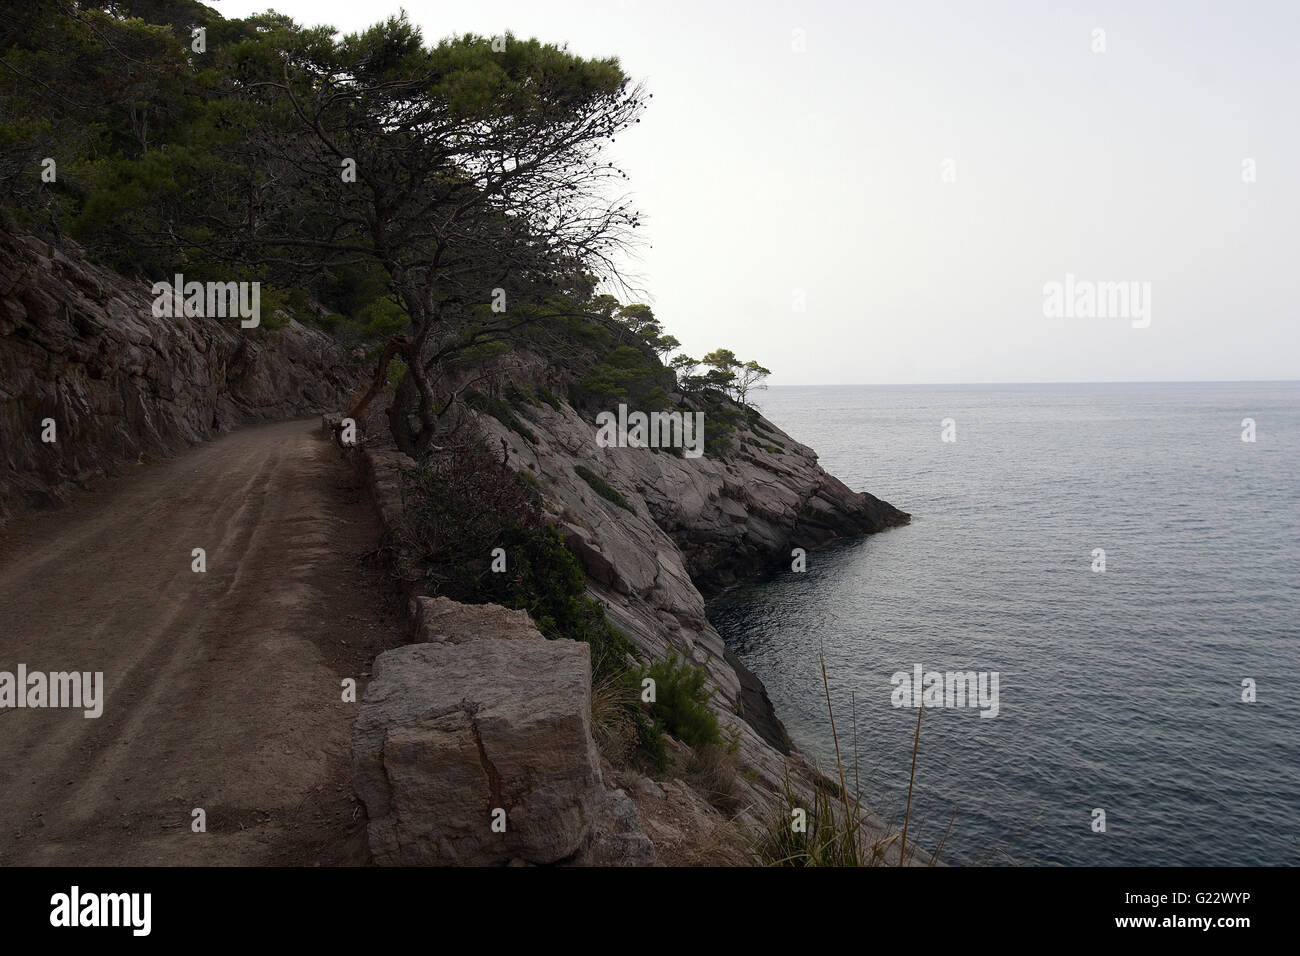 Una bella immagine di un sentiero con vegetazione oltre il mare calmo in Palma de Mallorca, Spagna, Mare, turismo e vacanze Foto Stock